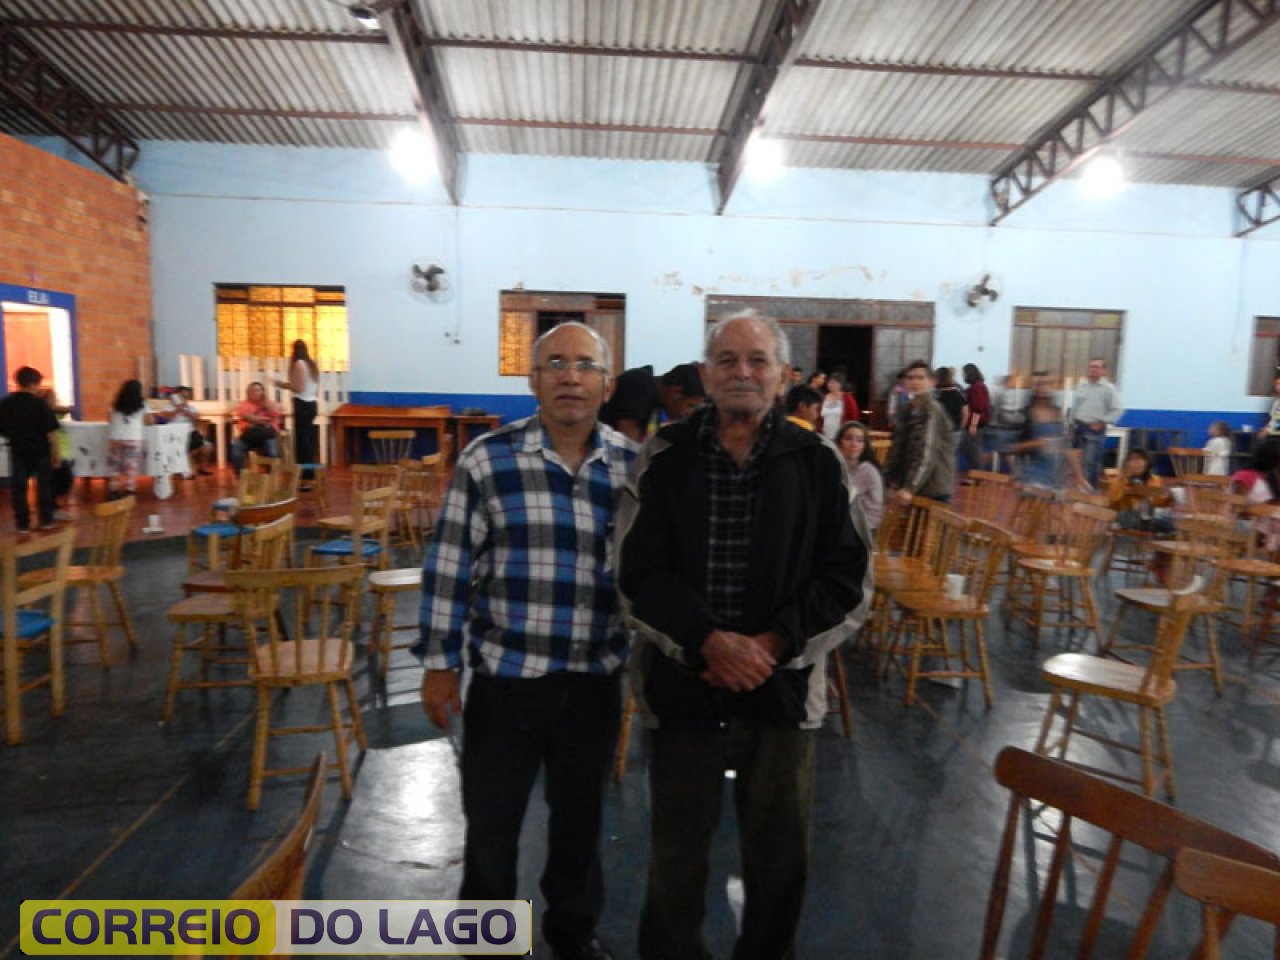 Prof. João e Mário Noro - morador de Sta Helena Velha a 84 anos. Na década 1950-60 possuía um comércio naquela localidade. Moradores da Sede (SH) comprava produtos no seu armazém. F. 2014.